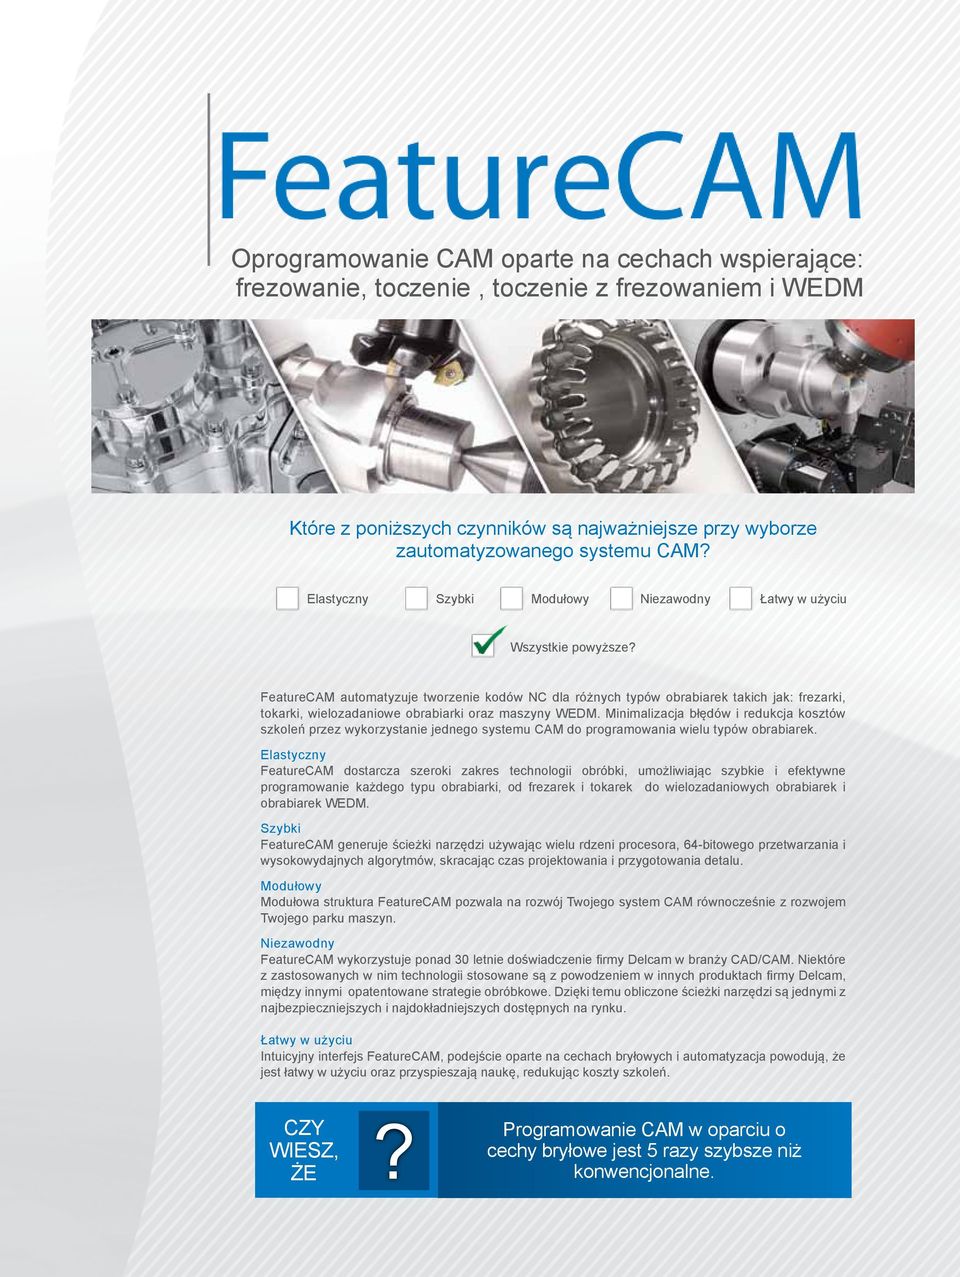 FeatureCAM automatyzuje tworzenie kodów NC dla różnych typów obrabiarek takich jak: frezarki, tokarki, wielozadaniowe obrabiarki oraz maszyny WEDM.